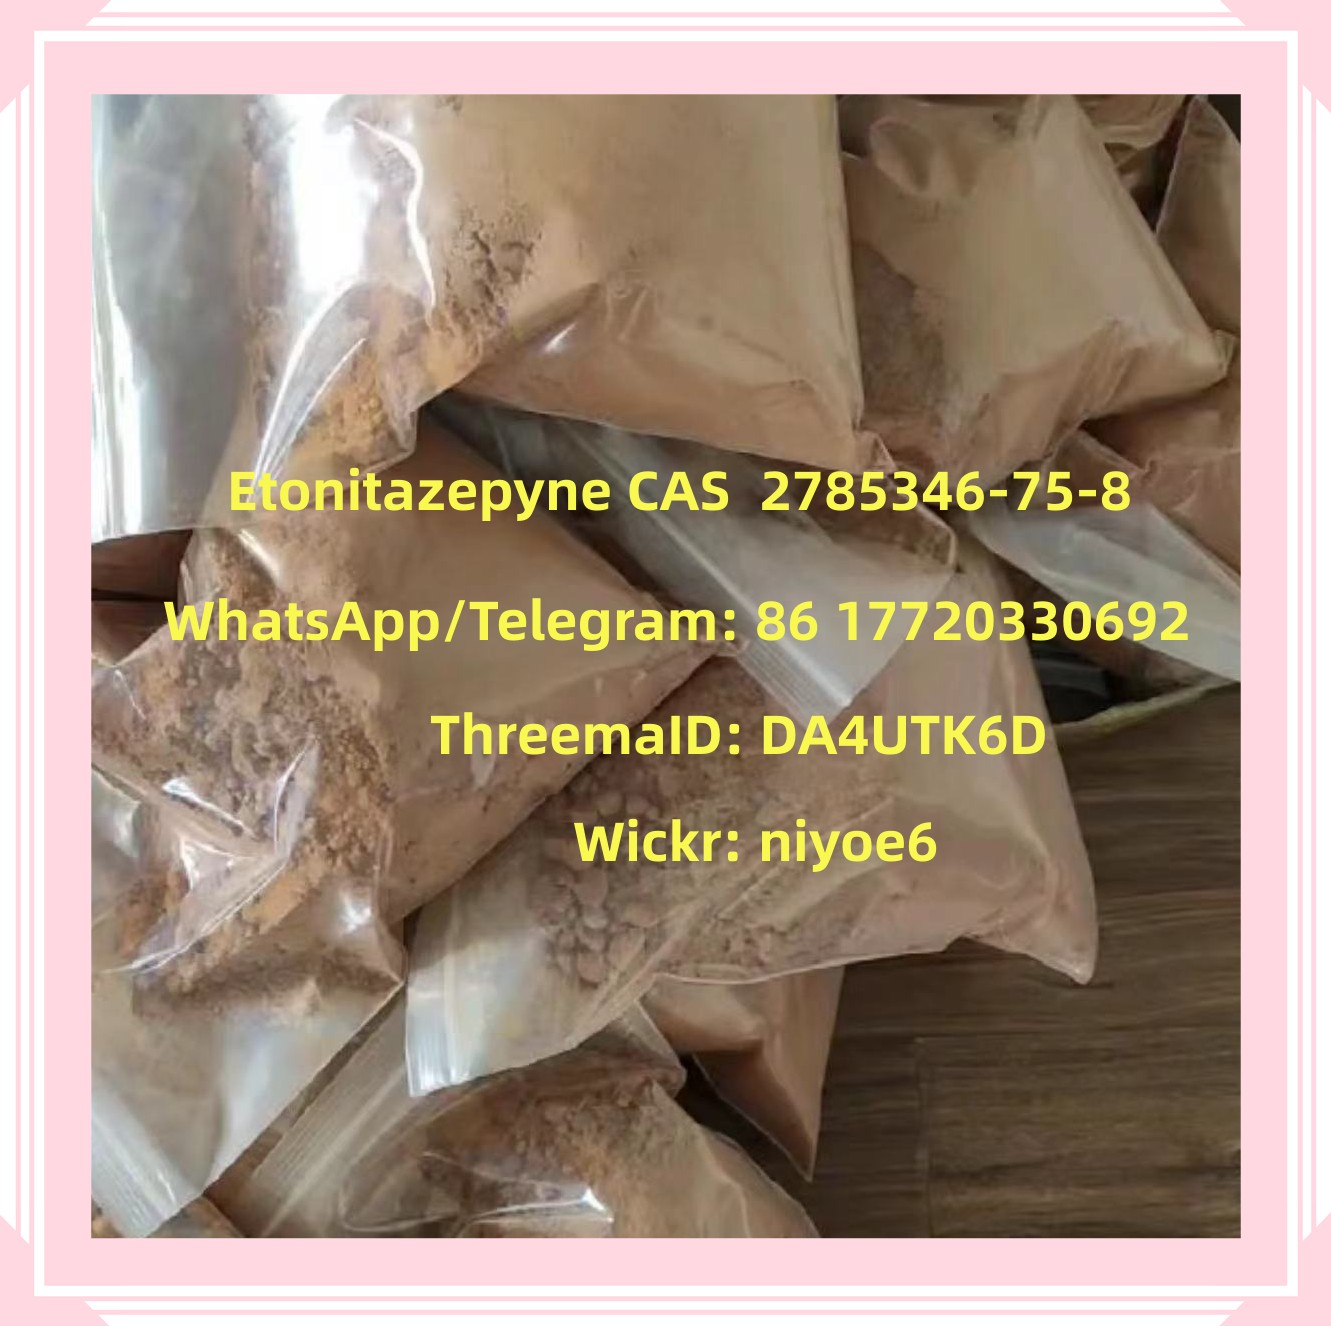 Buy New Opioids Etonitazepyne Powder CAS 2785346-75-8 Wickr: Niyoe6